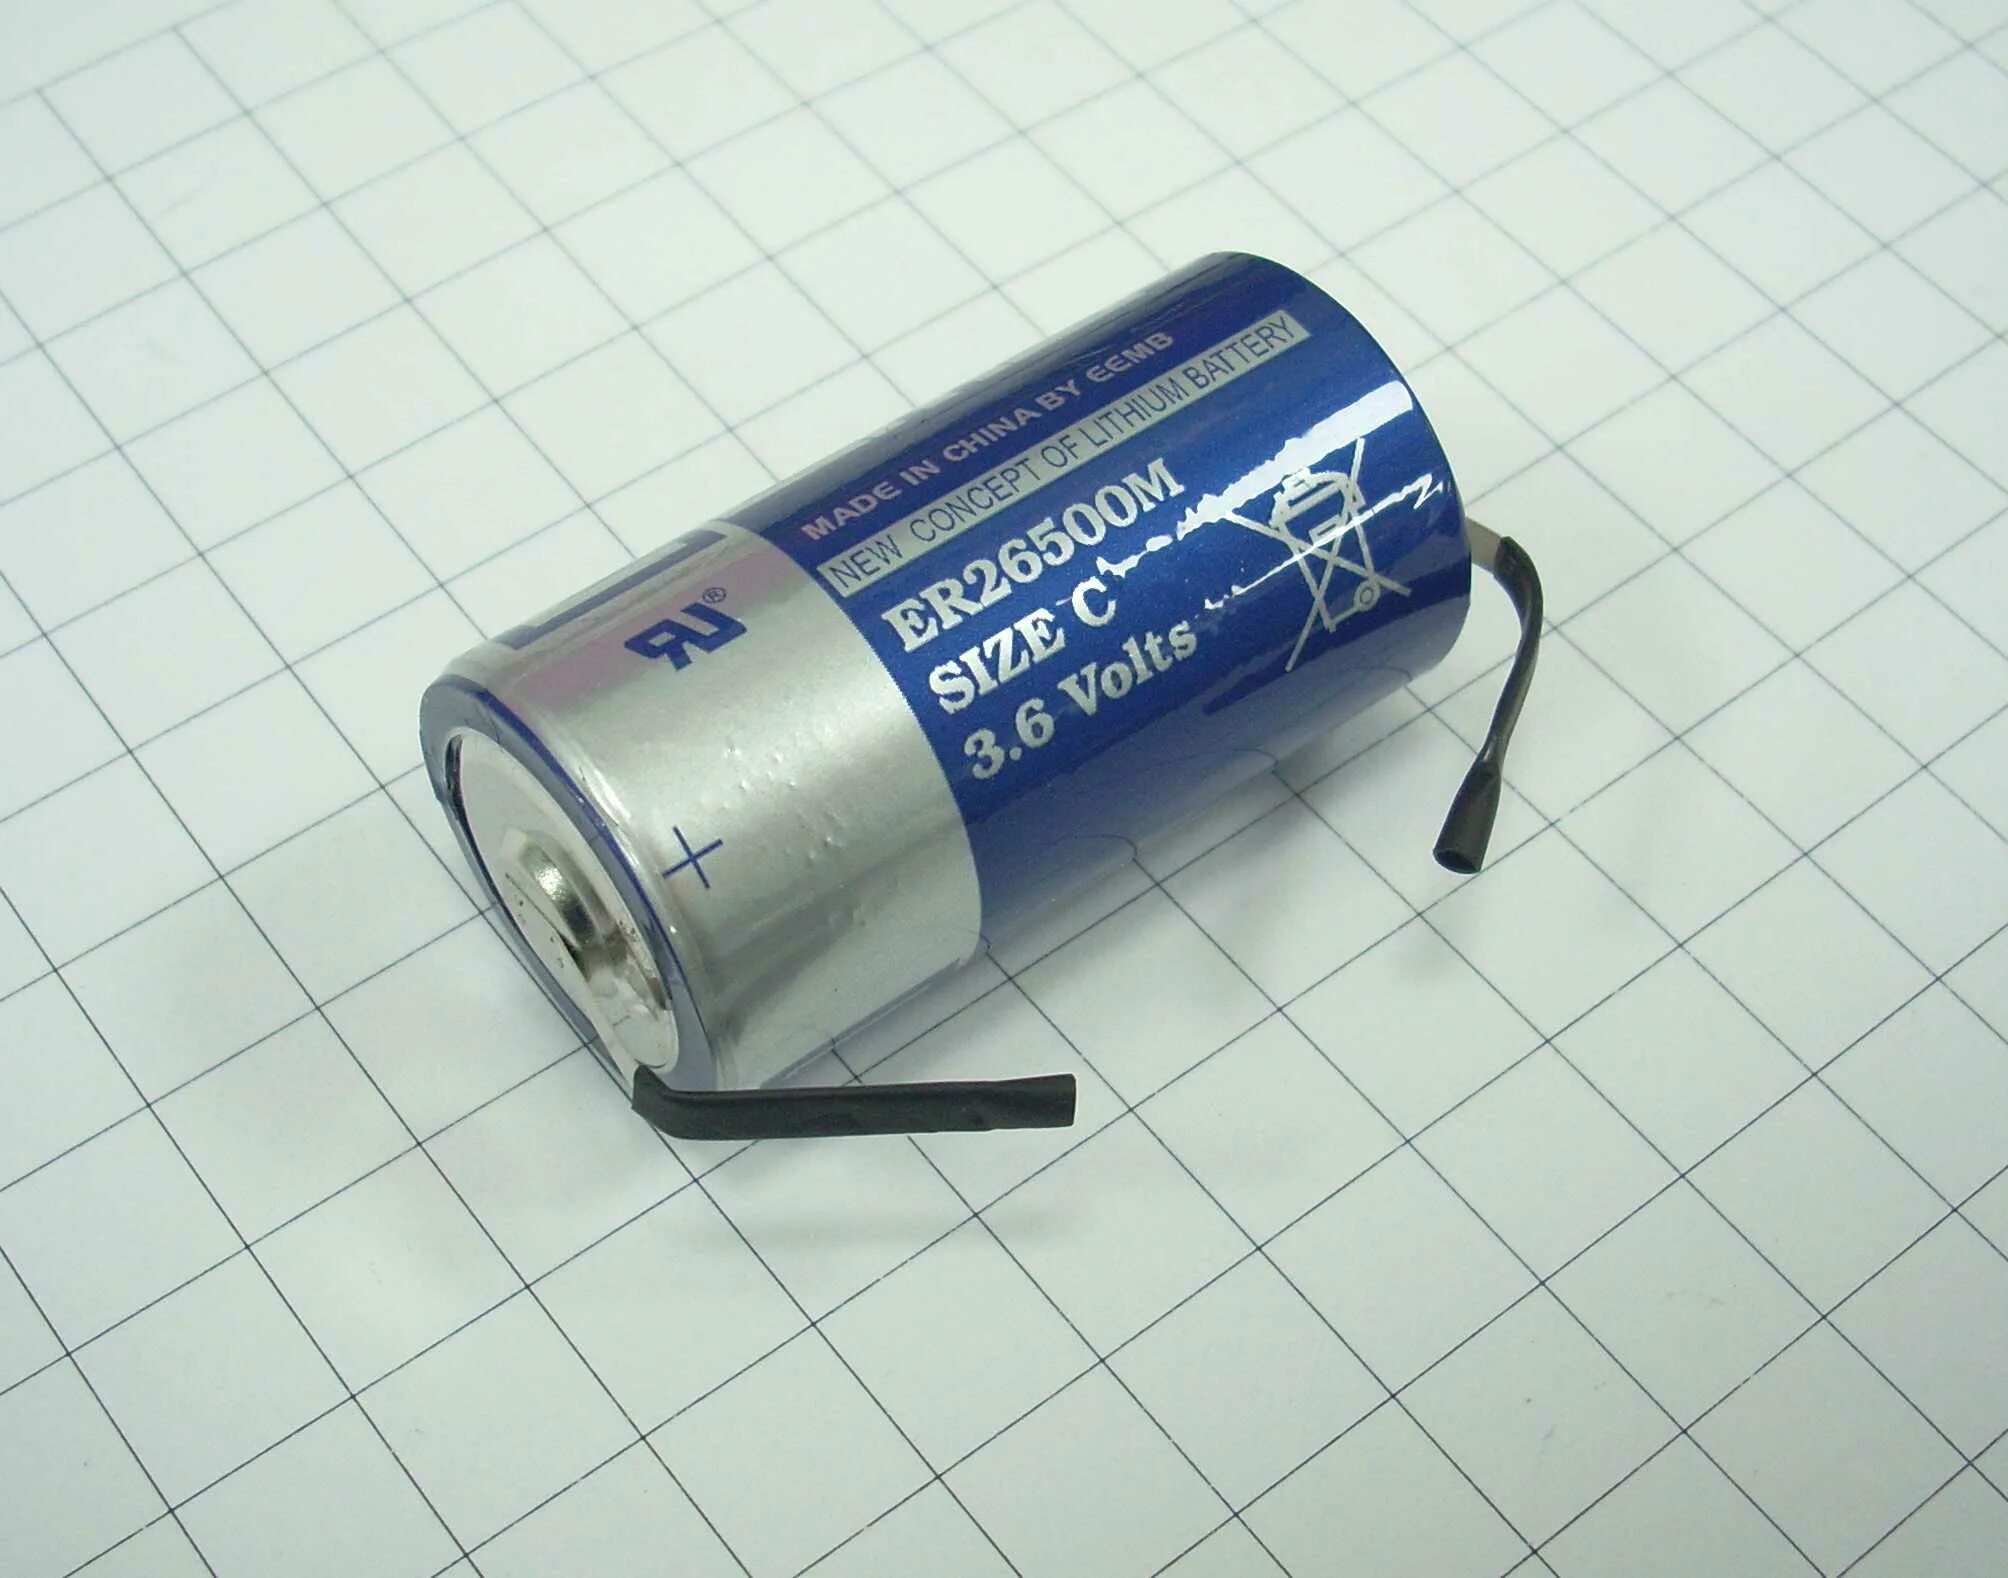 Купить батарейку 3.6. Батарейка er26500 3.6v. Батарея er26500 3.6v EEMB. Батарейка er26500 c 3,6 v. Элемент питания 3,6v (er26500/t)(Minamoto).